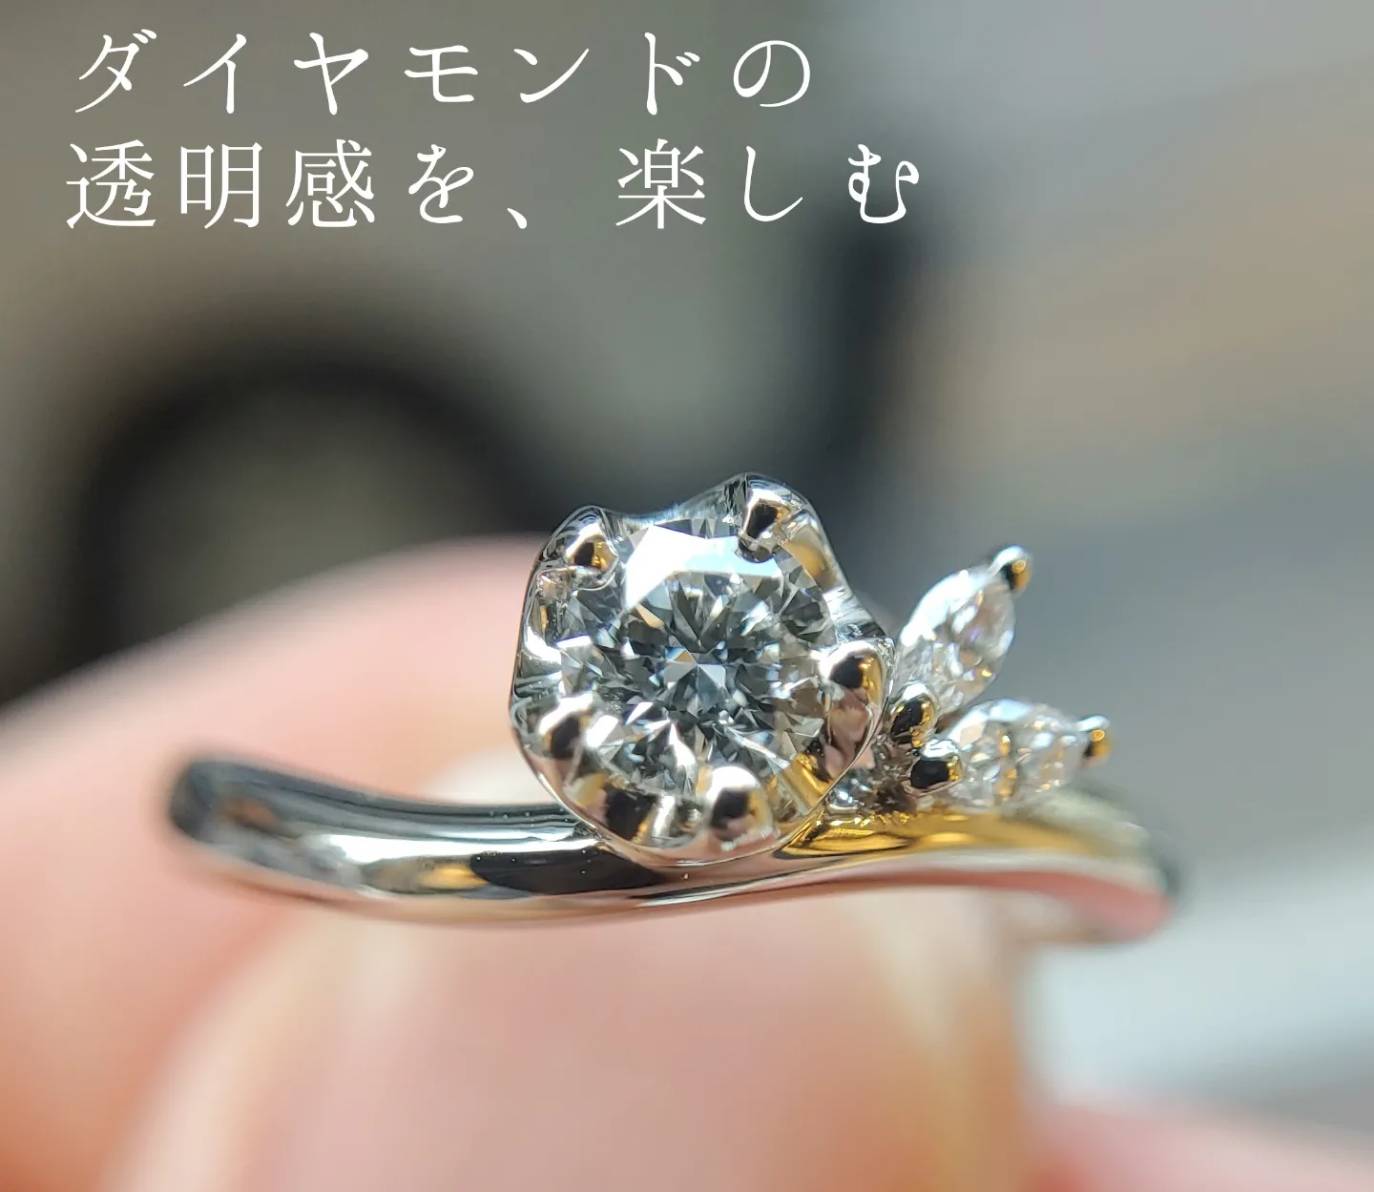 雪椿がモチーフの透明度の高い天然ダイヤモンド婚約指輪